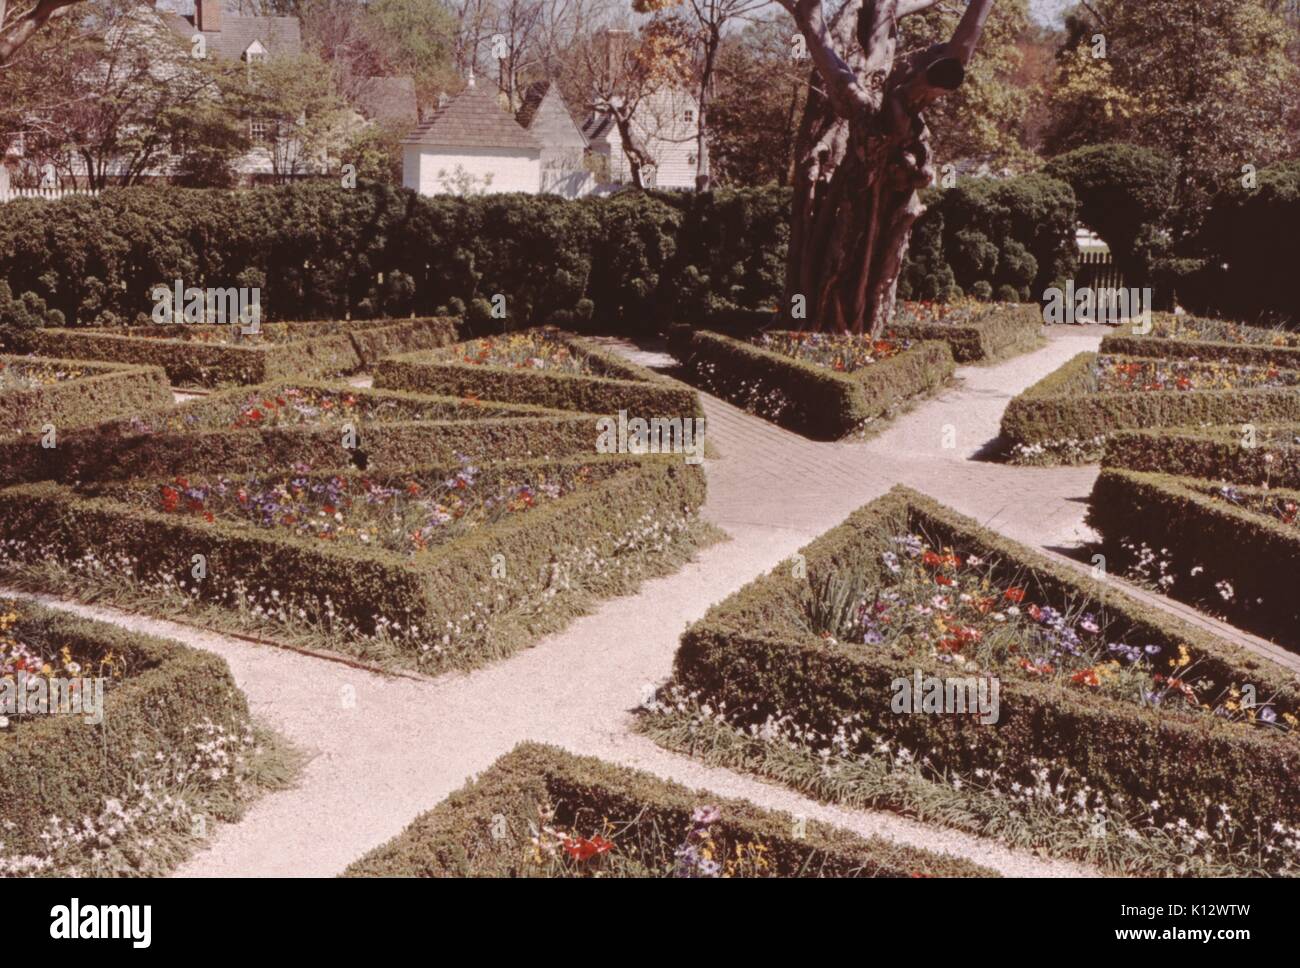 Williamsburg Coloniale, giardino formale con righe di topiaria da intagliato in modelli intricati, Virginia, 1966. Foto Stock